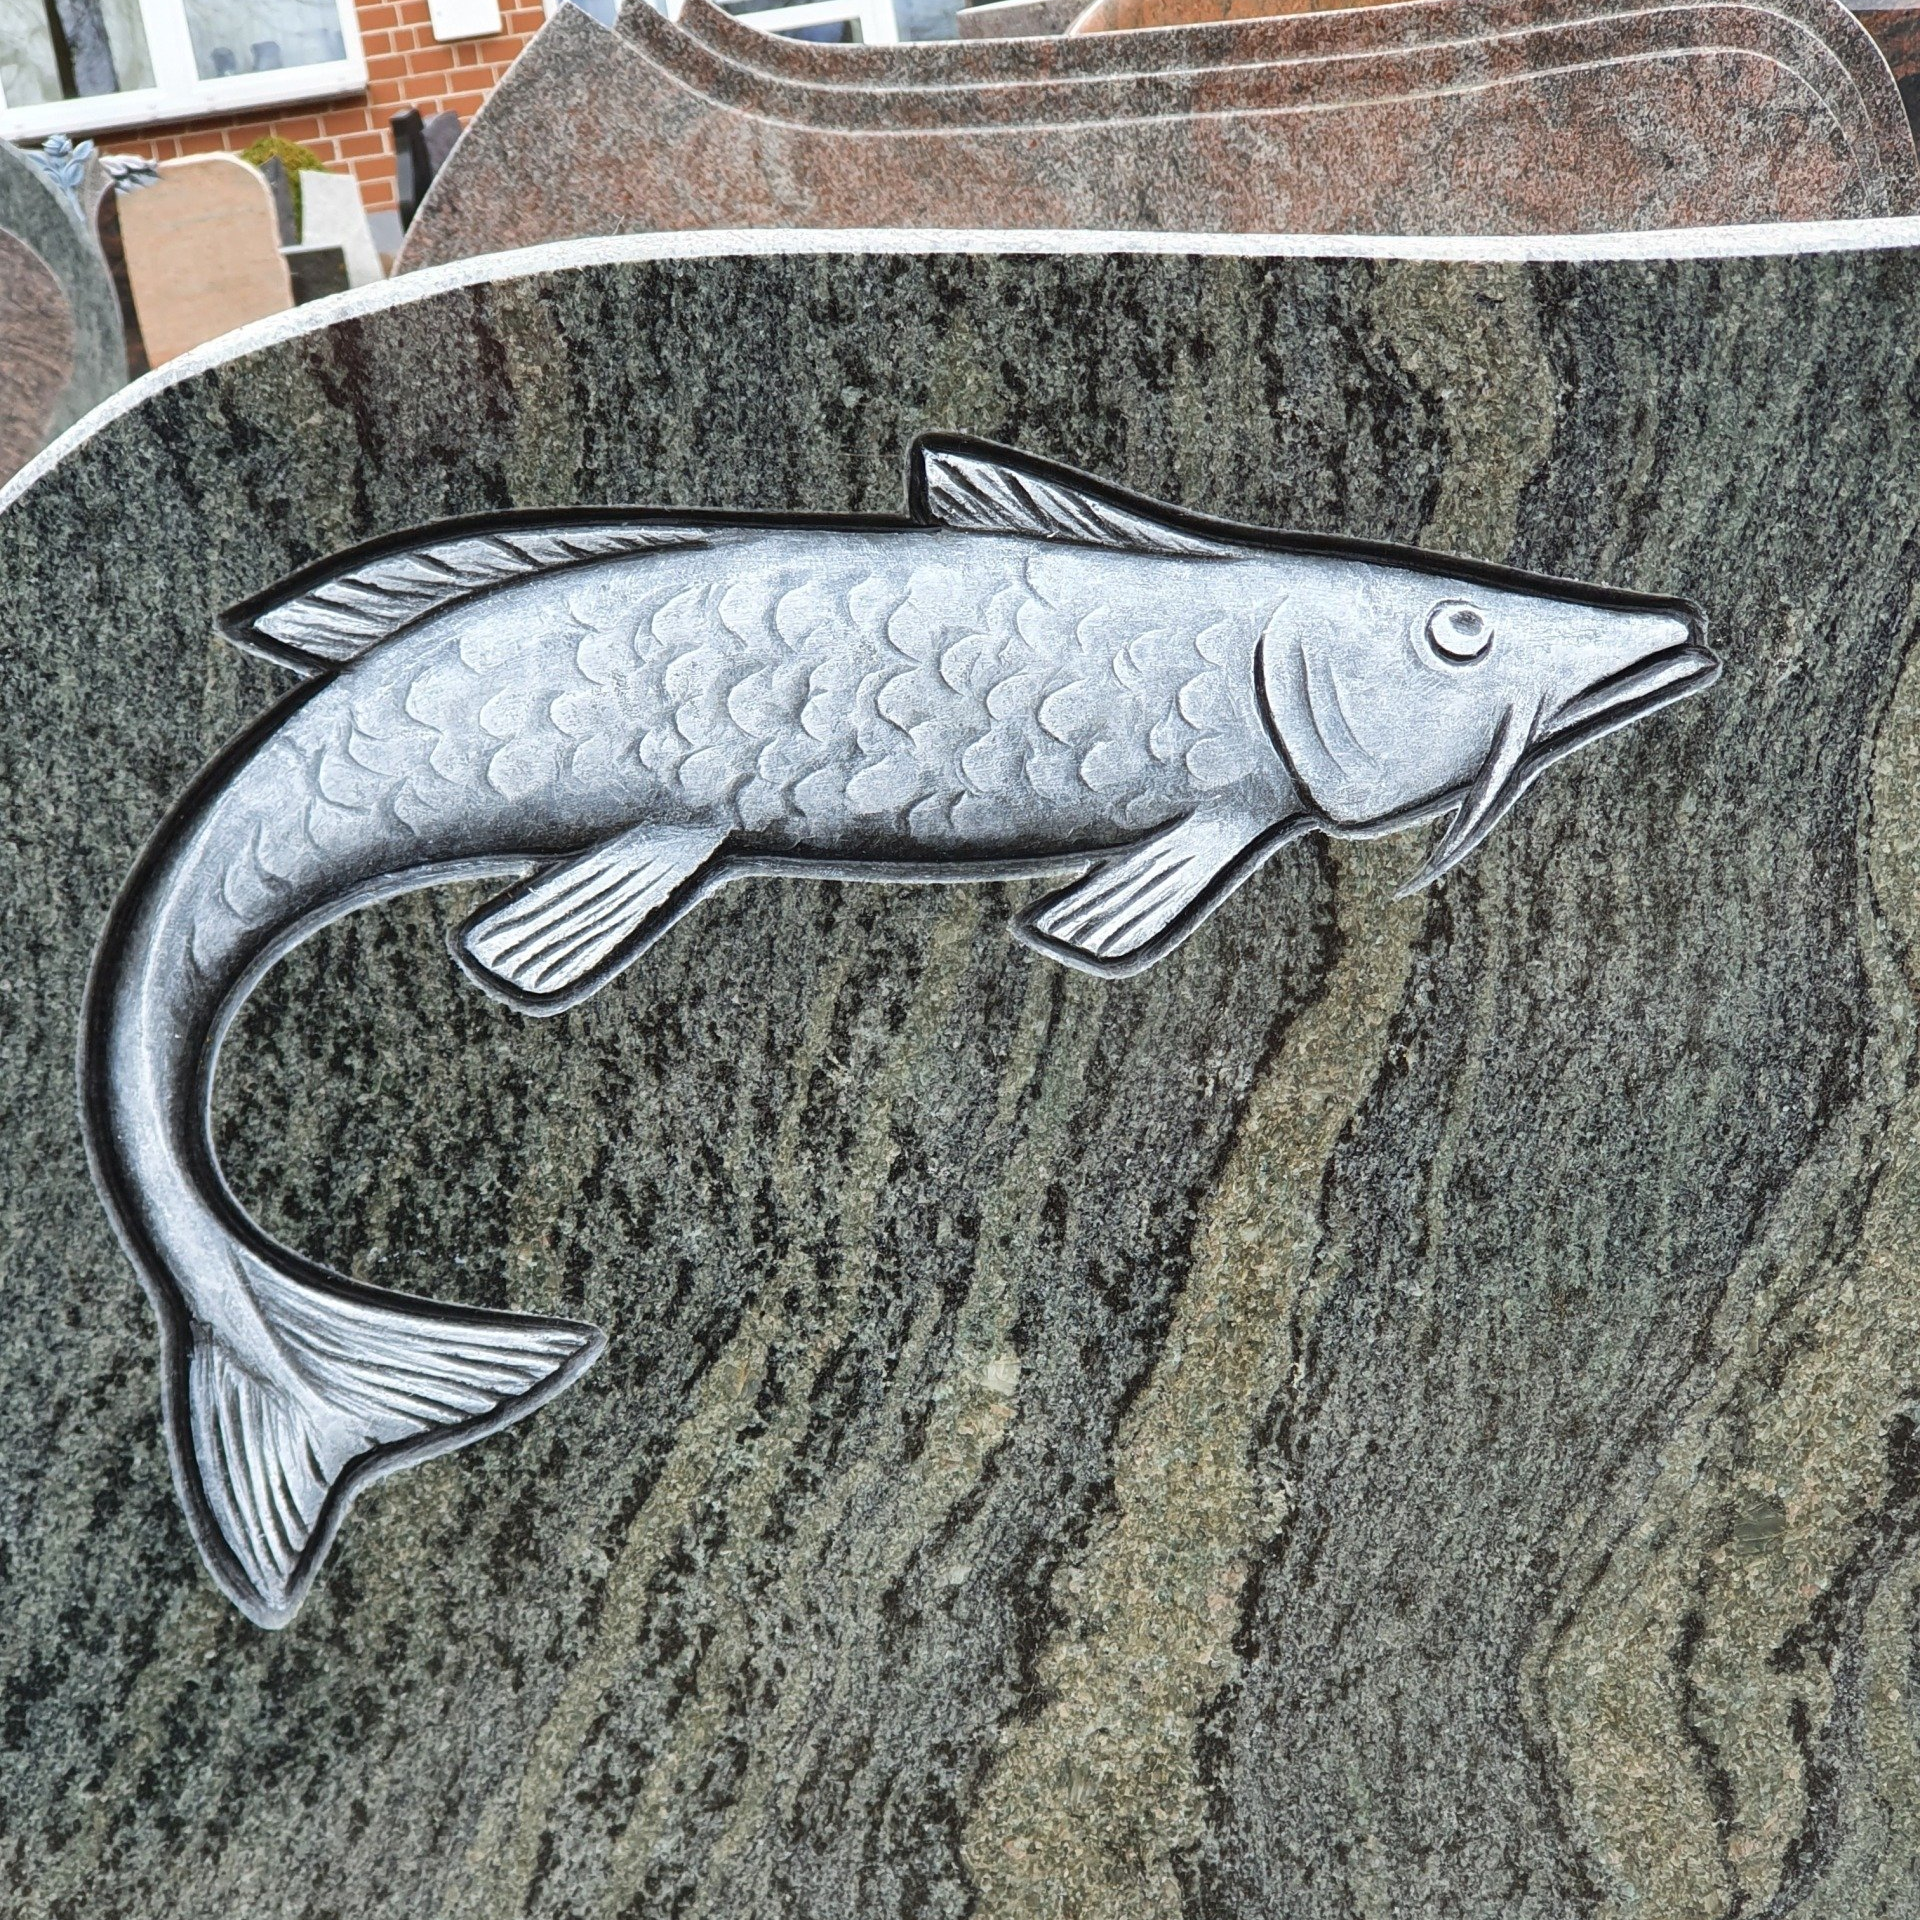 Fisch als Ornament - Halbplastisches Ornament - Meyn Grabsteine in Bad Bevensen